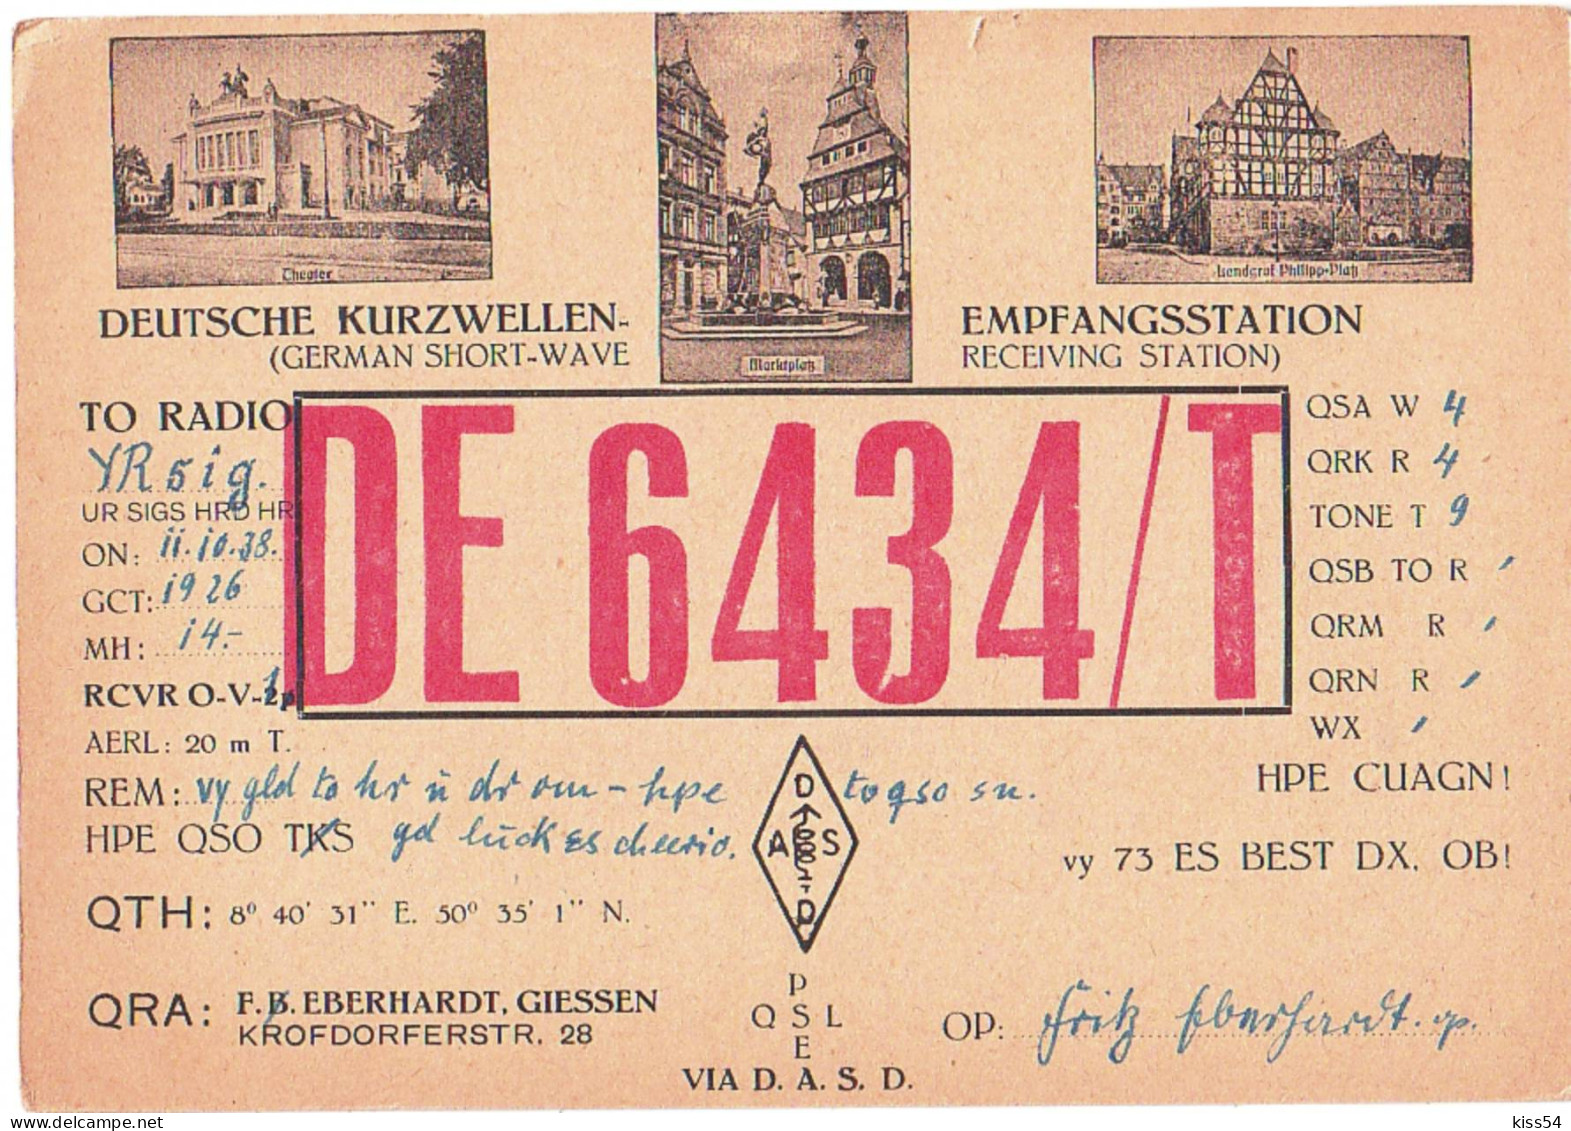 Q 40 - 31 GERMANY - 1938 - Amateurfunk